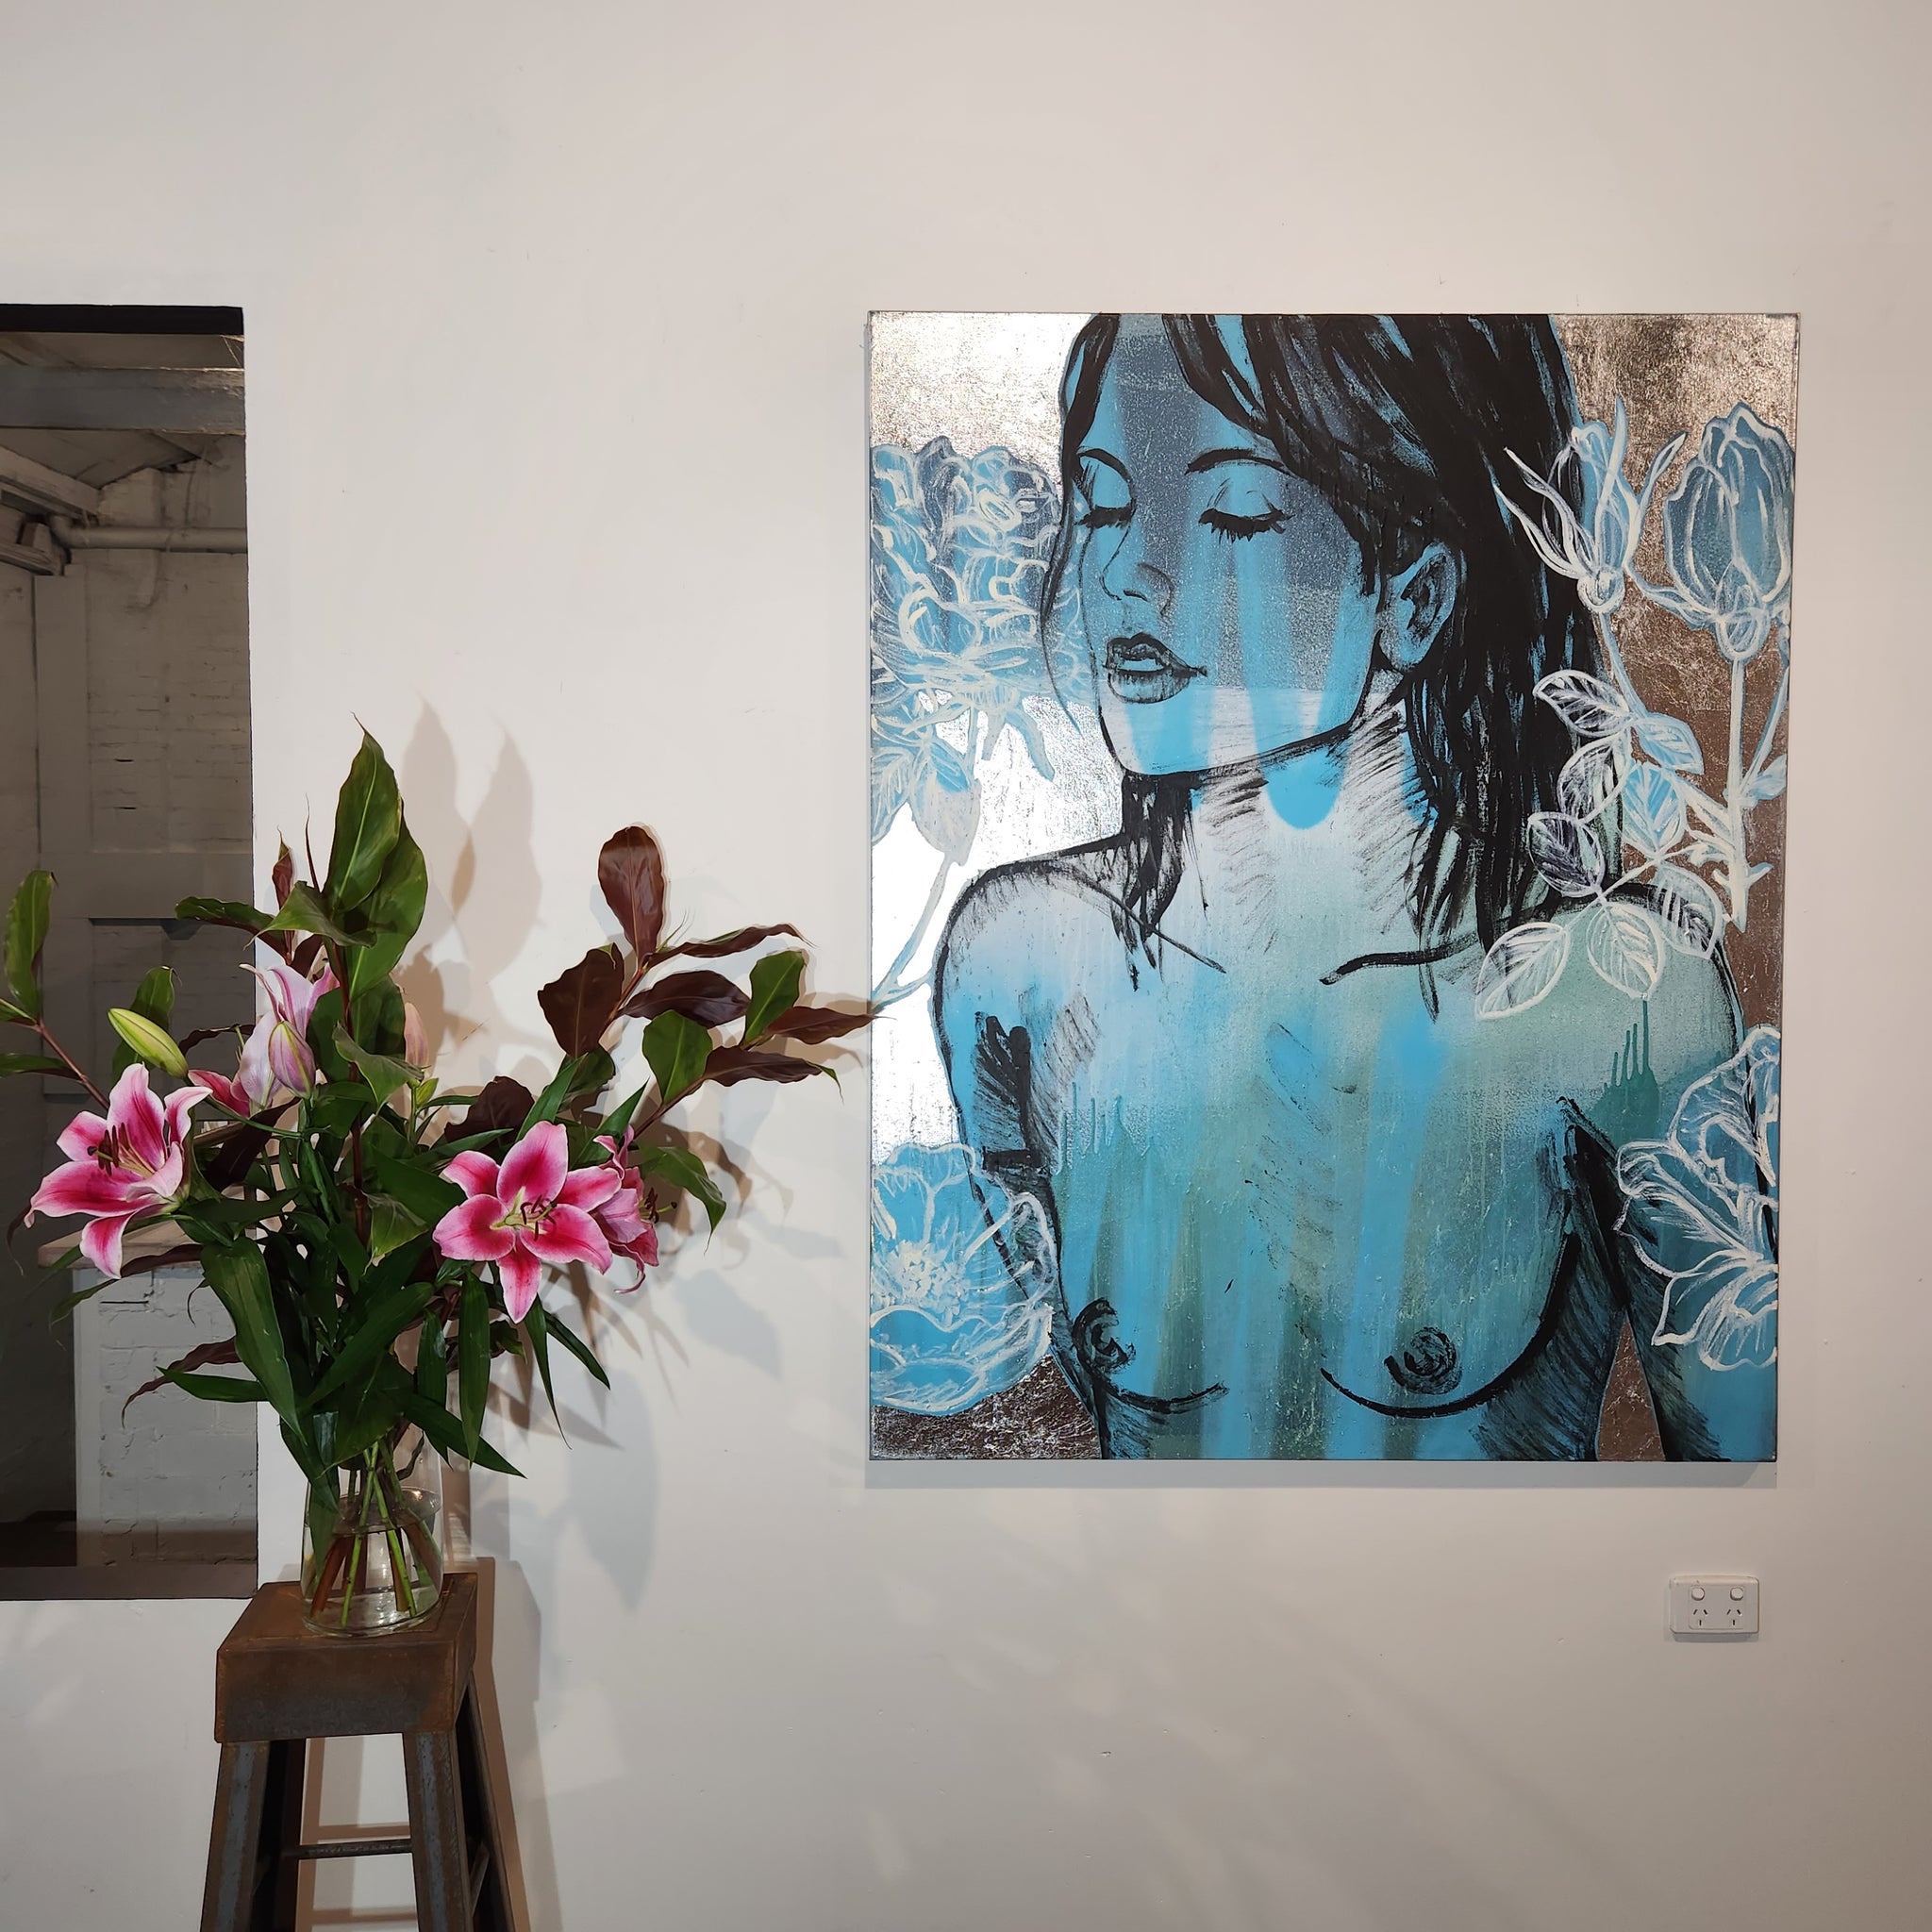 'Belinda II' David Bromley. Acrylic on canvas with silver leaf gilding. 150cm x 120cm.